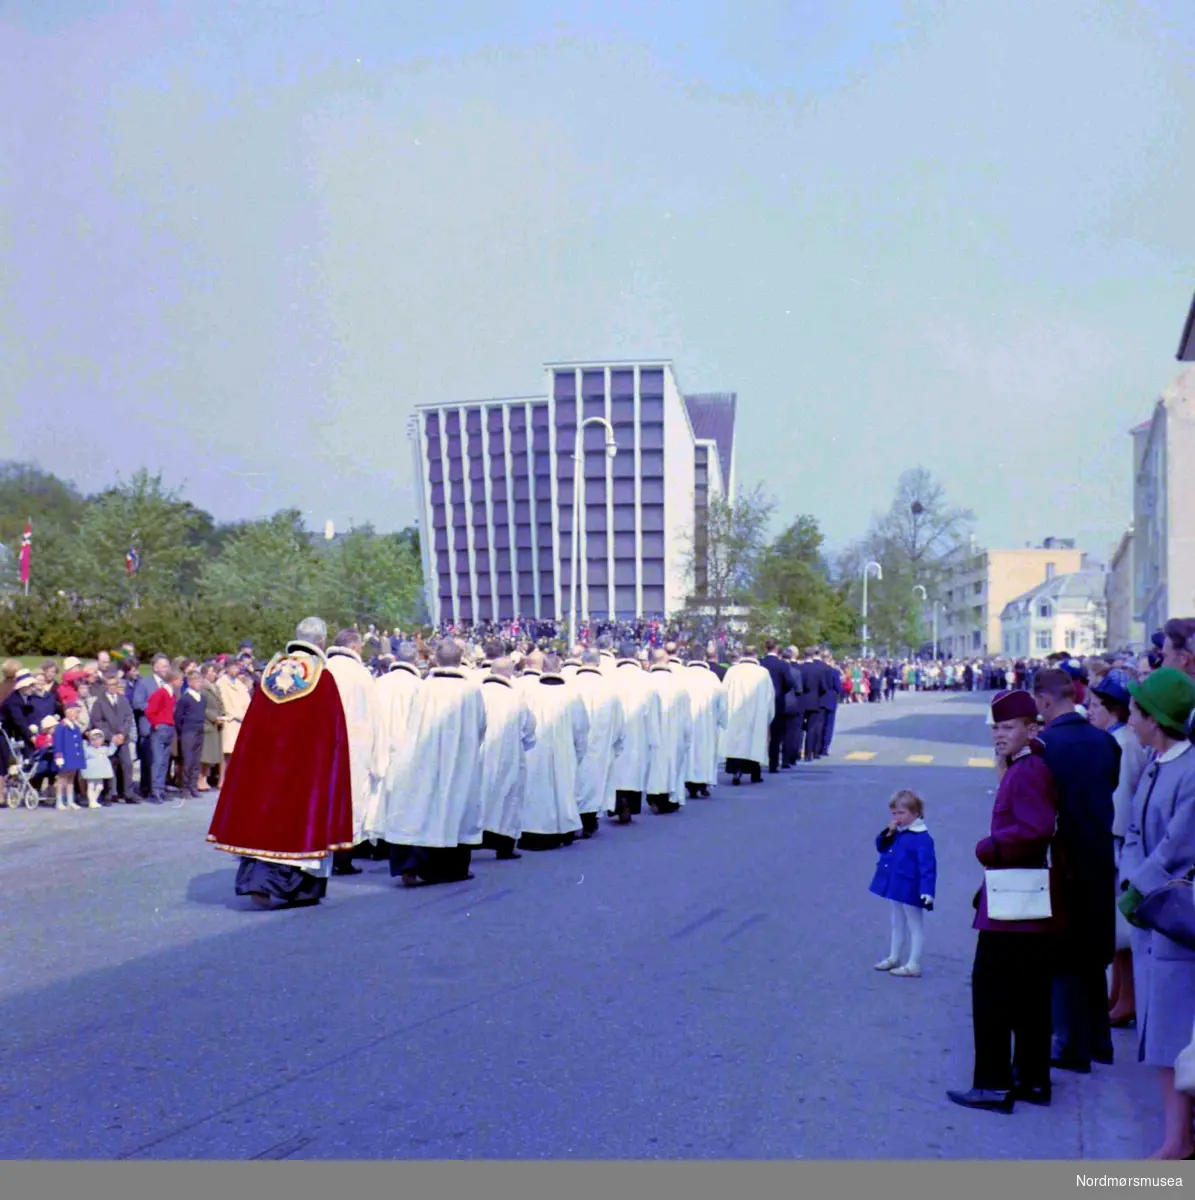 Kirkelig prosesjon. Fotografiet er trolig fra innvielsen av Kirkelandet kirke den 24.mai 1964, på Kirkelandet i Kristiansund. Fotograf er Nils Williams. Fra Nordmøre museums fotosamlinger.